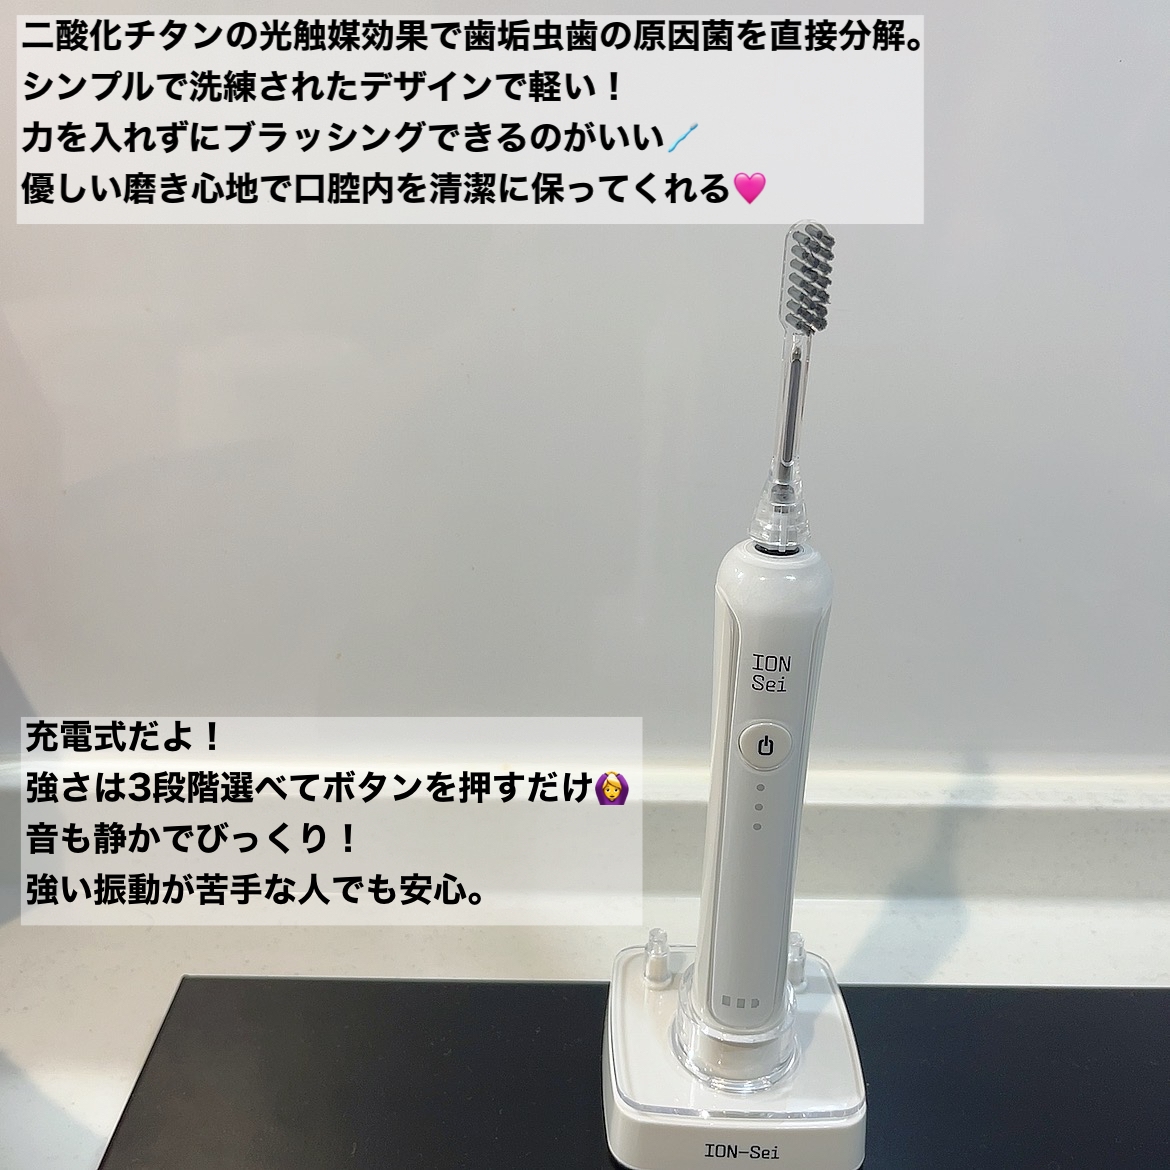 ION-Sei(イオン セイ) 電動歯ブラシの良い点・メリットに関するkhさんの口コミ画像2